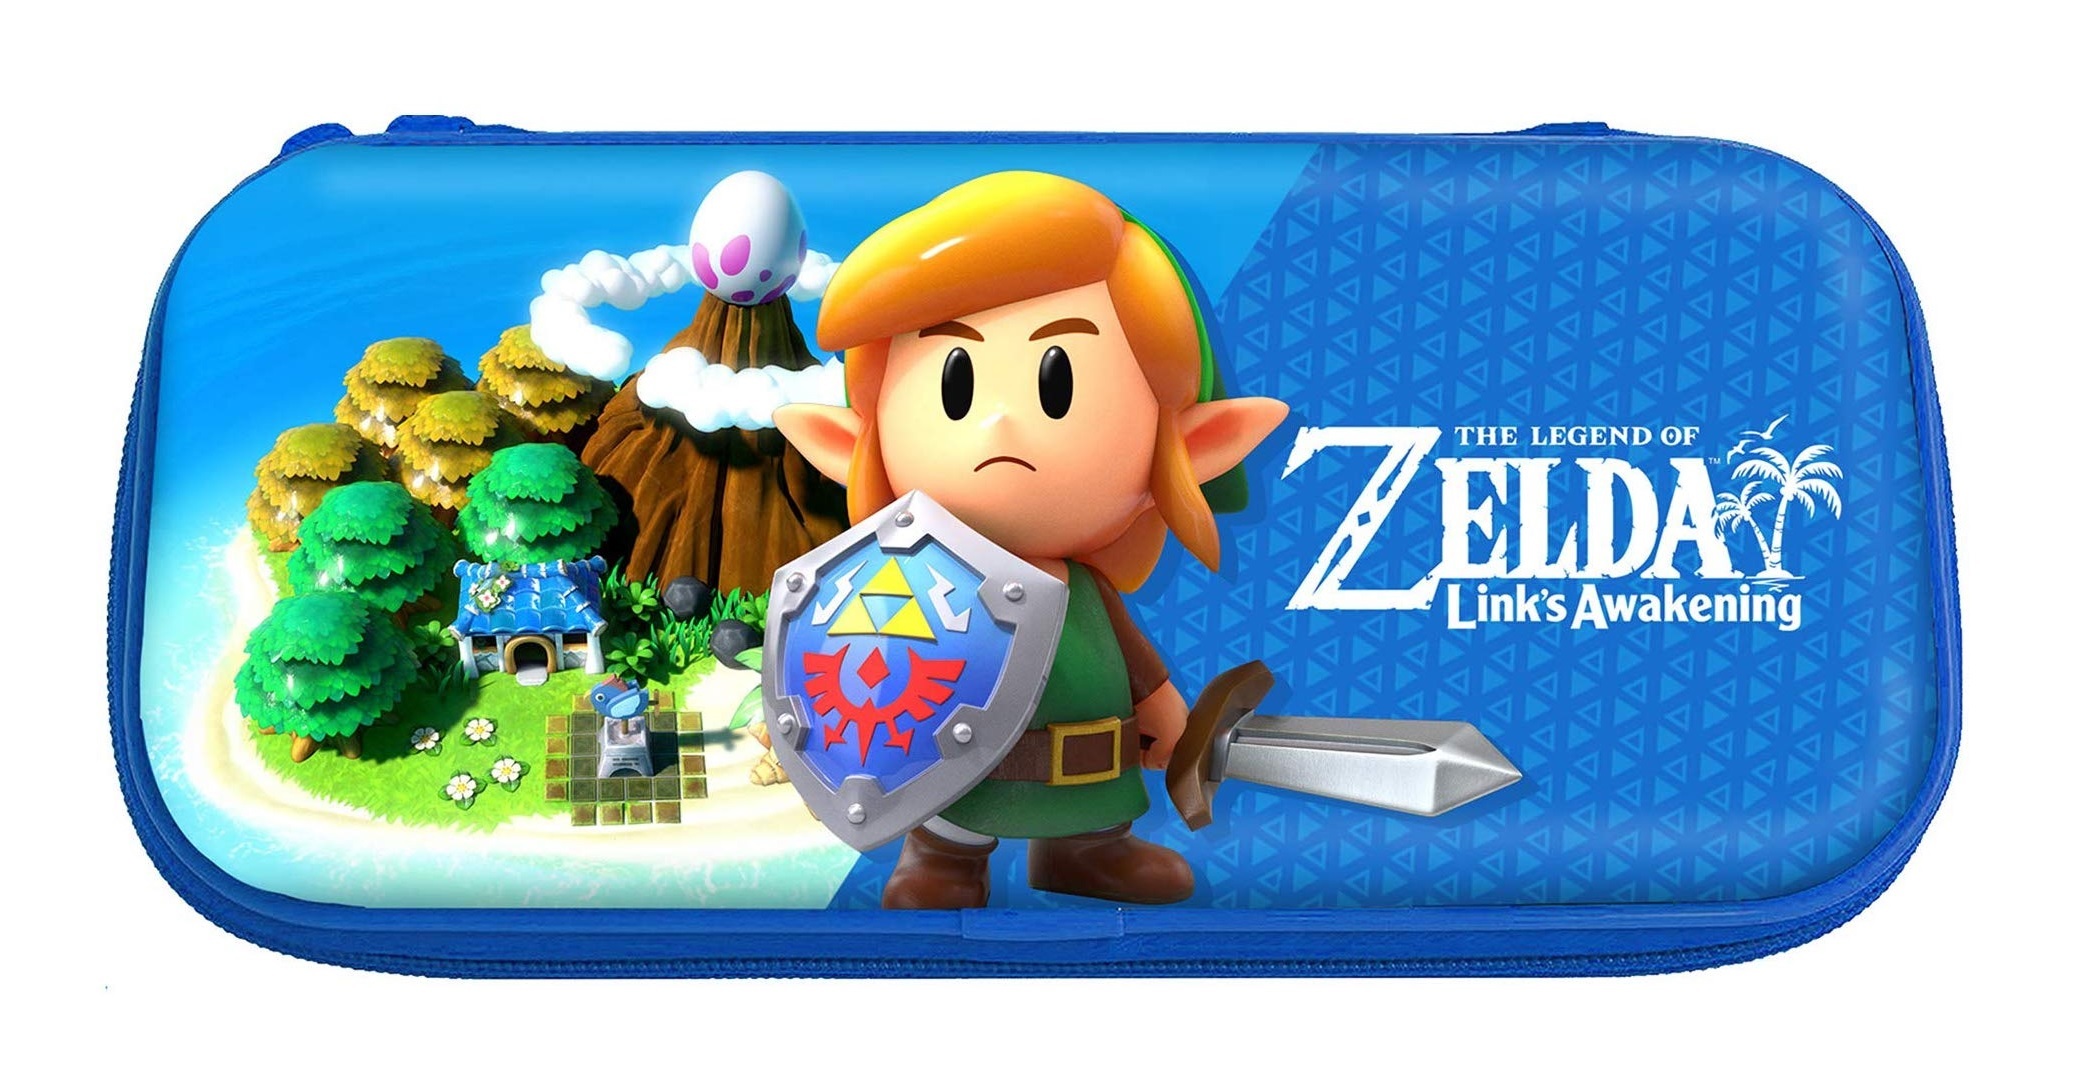 The Legend of Zelda: Link's Awakening - Announcement Trailer - Nintendo  Switch 